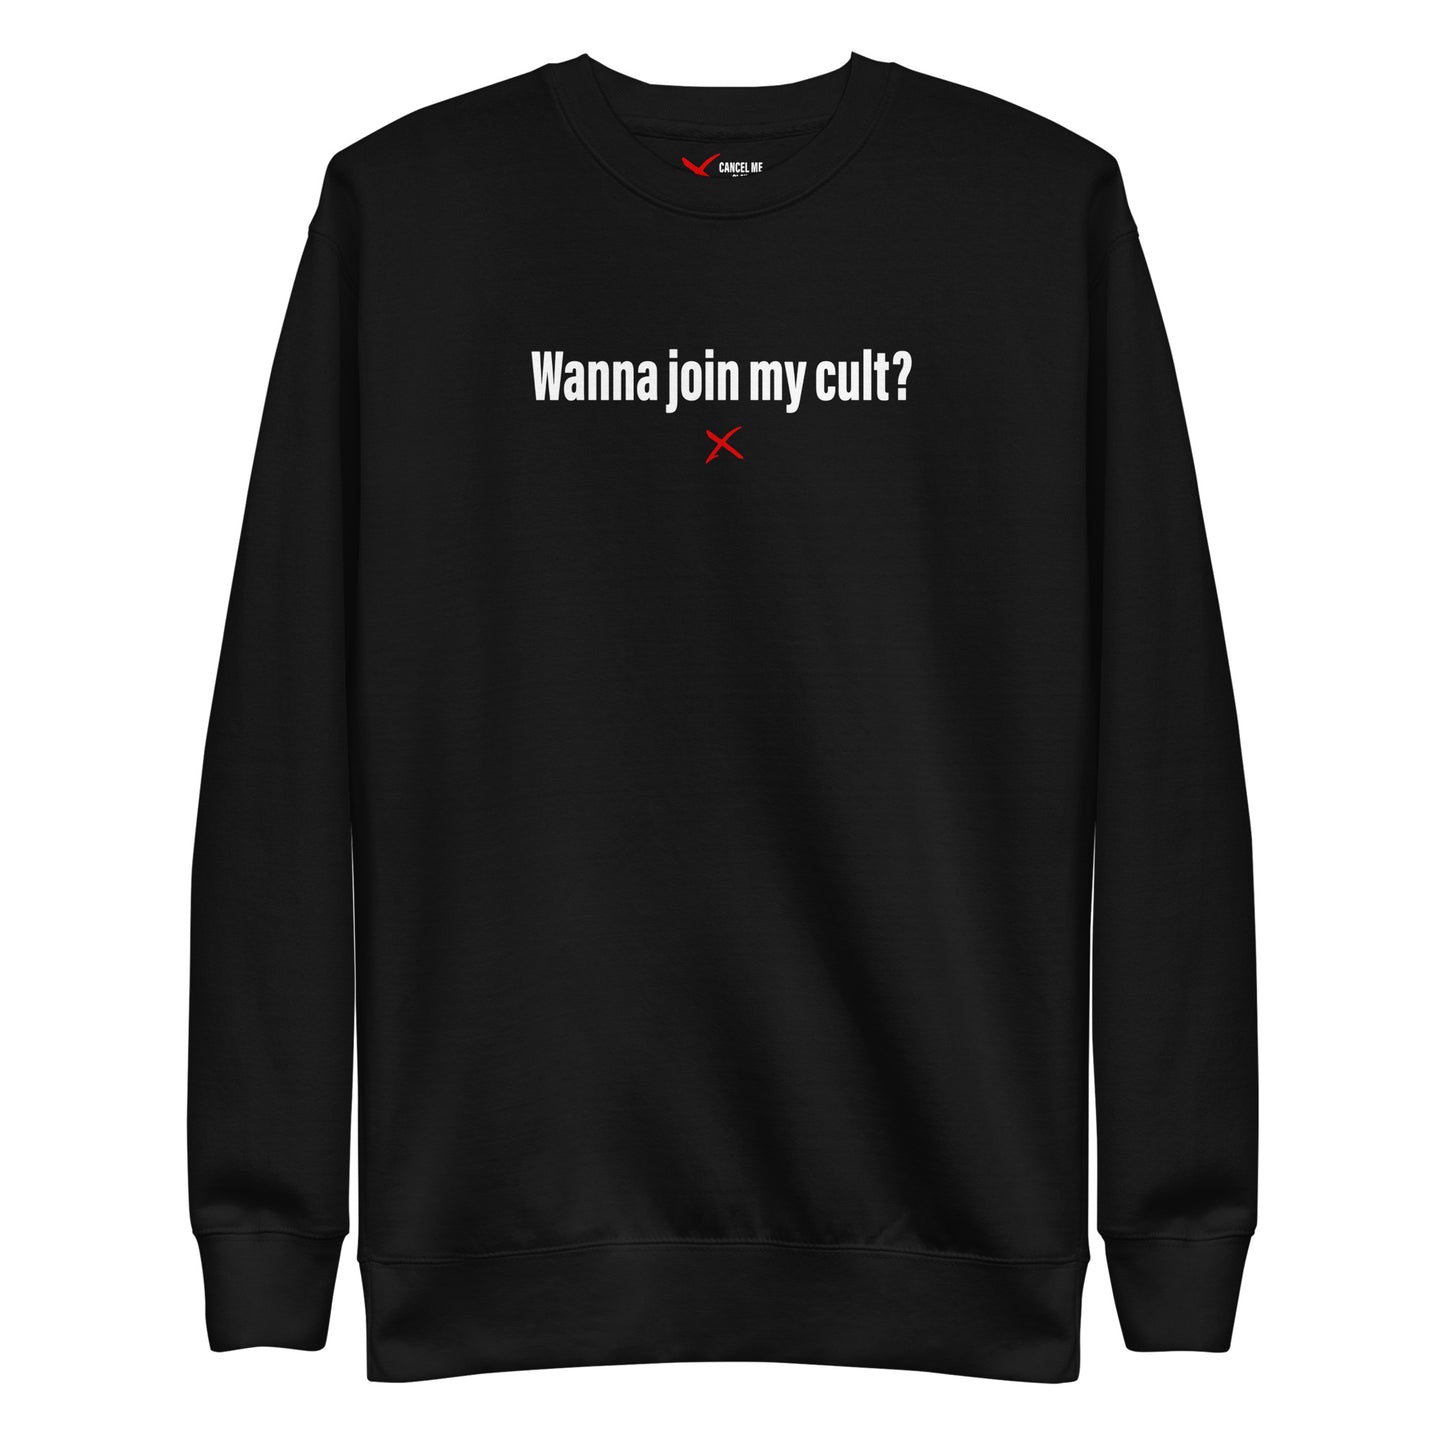 Wanna join my cult? - Sweatshirt